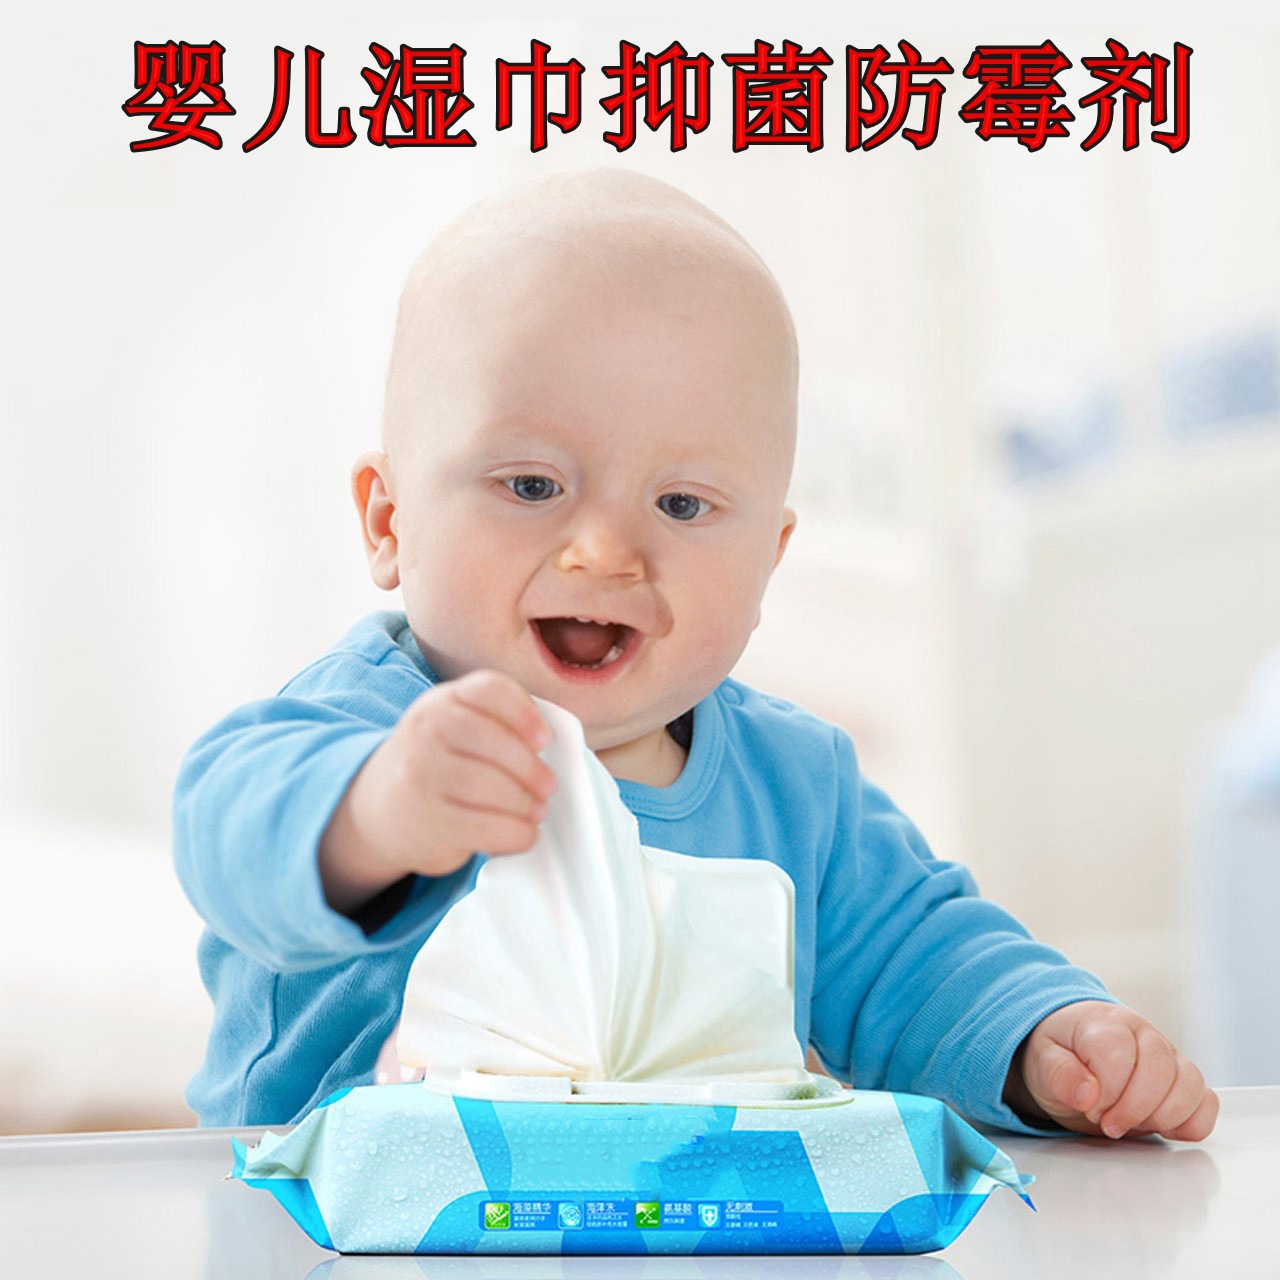 湿巾防腐剂厂家直销 婴儿用湿巾杀菌剂  湿巾防霉剂